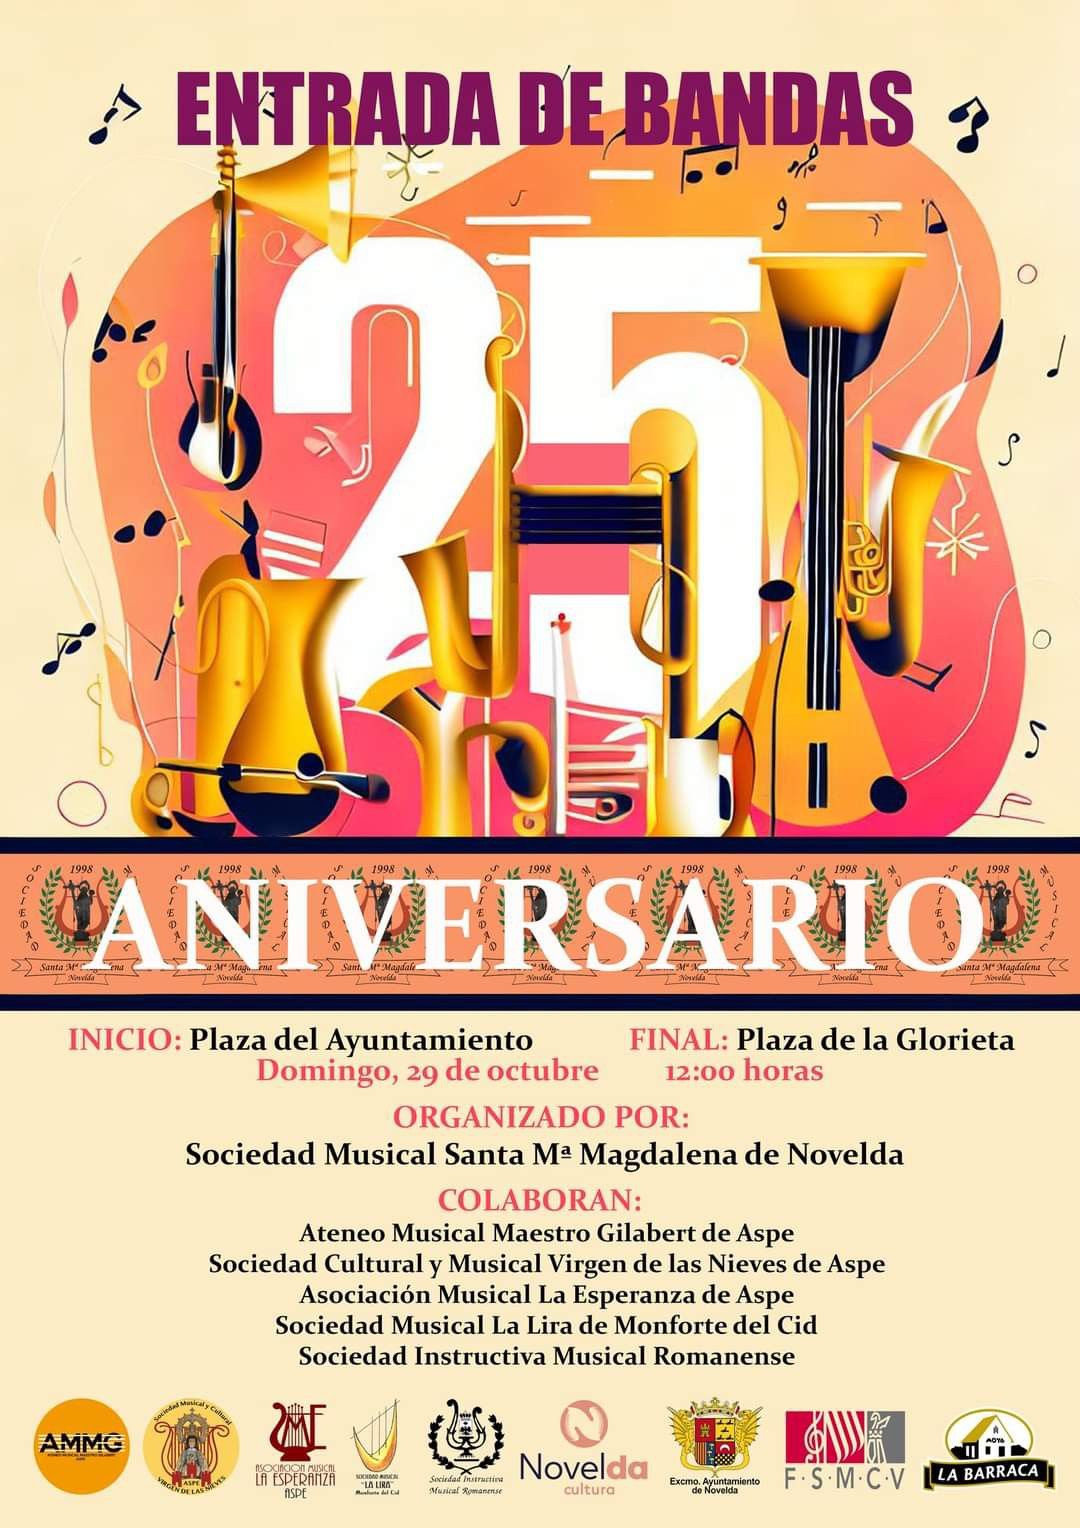 Ayuntamiento de Novelda 25-aniversario-santa-maría-magdalena Entrada de Bandas en Novelda por la Sociedad Musical Santa María Magdalena de Novelda. 